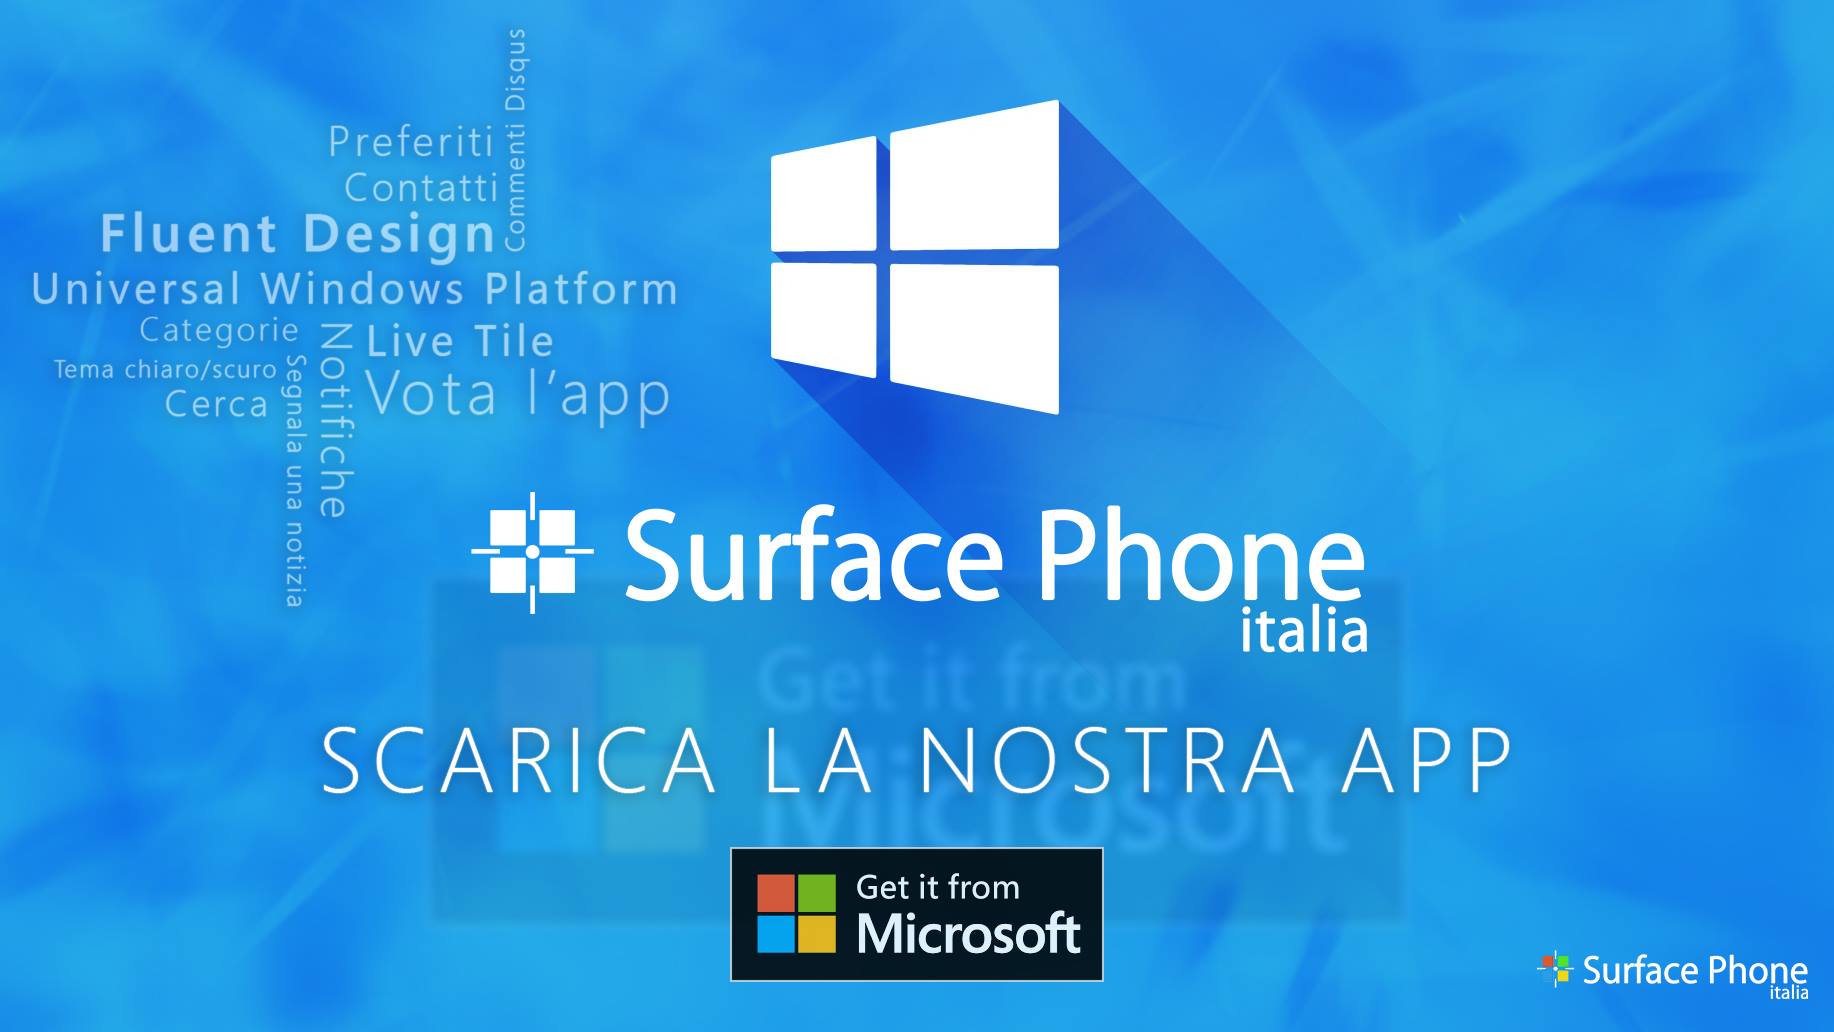 Surface Phone Italia: scarica la nostra APP dal Windows Store!